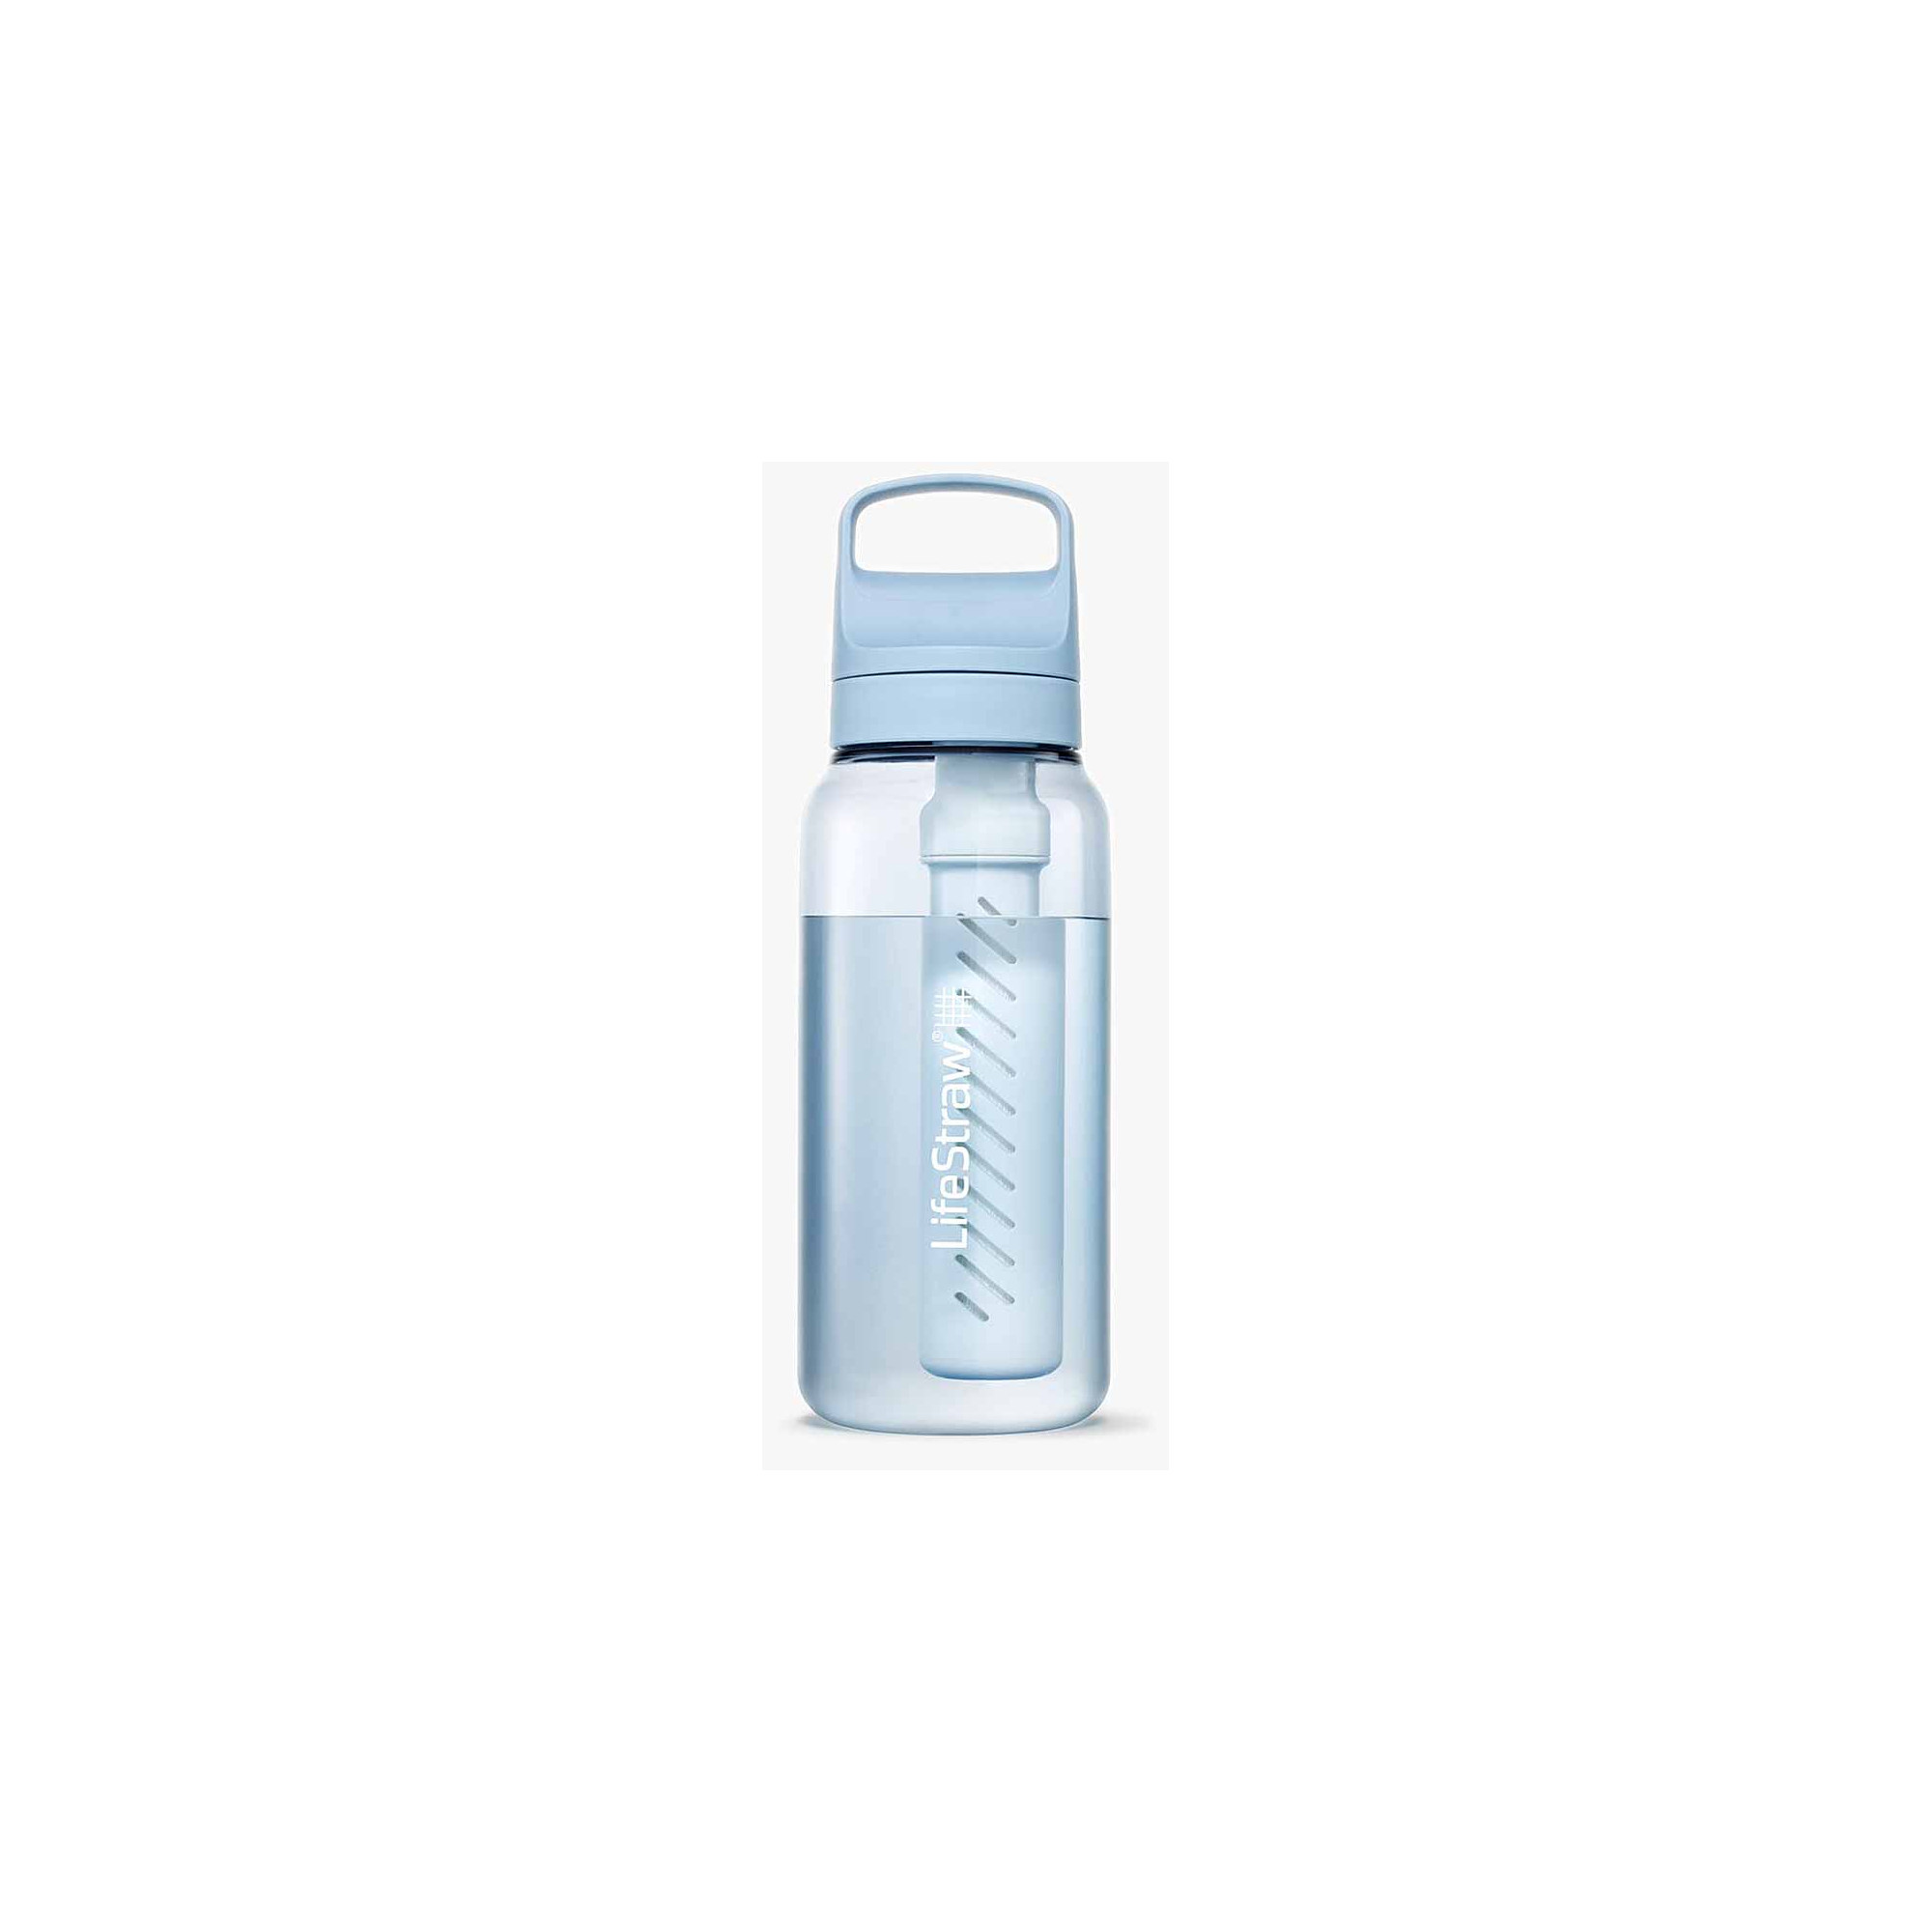 Filtro acqua e carbone G0 Lifestraw 1 litro - Filtri acqua - Inuka